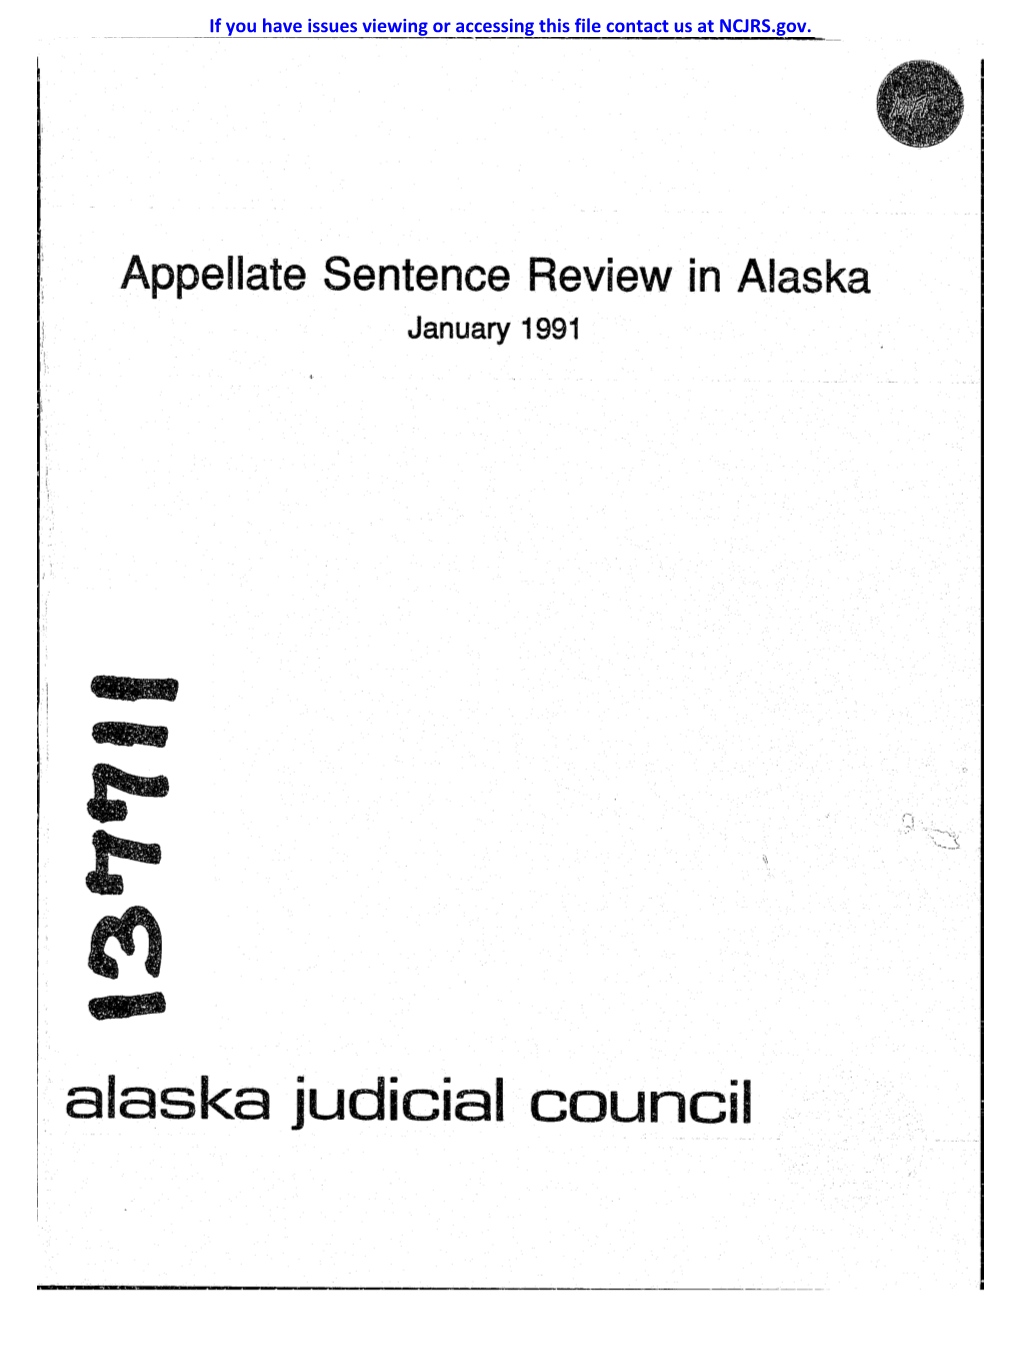 Alaska Judicial Council Alaska Judicial Council 1029 W